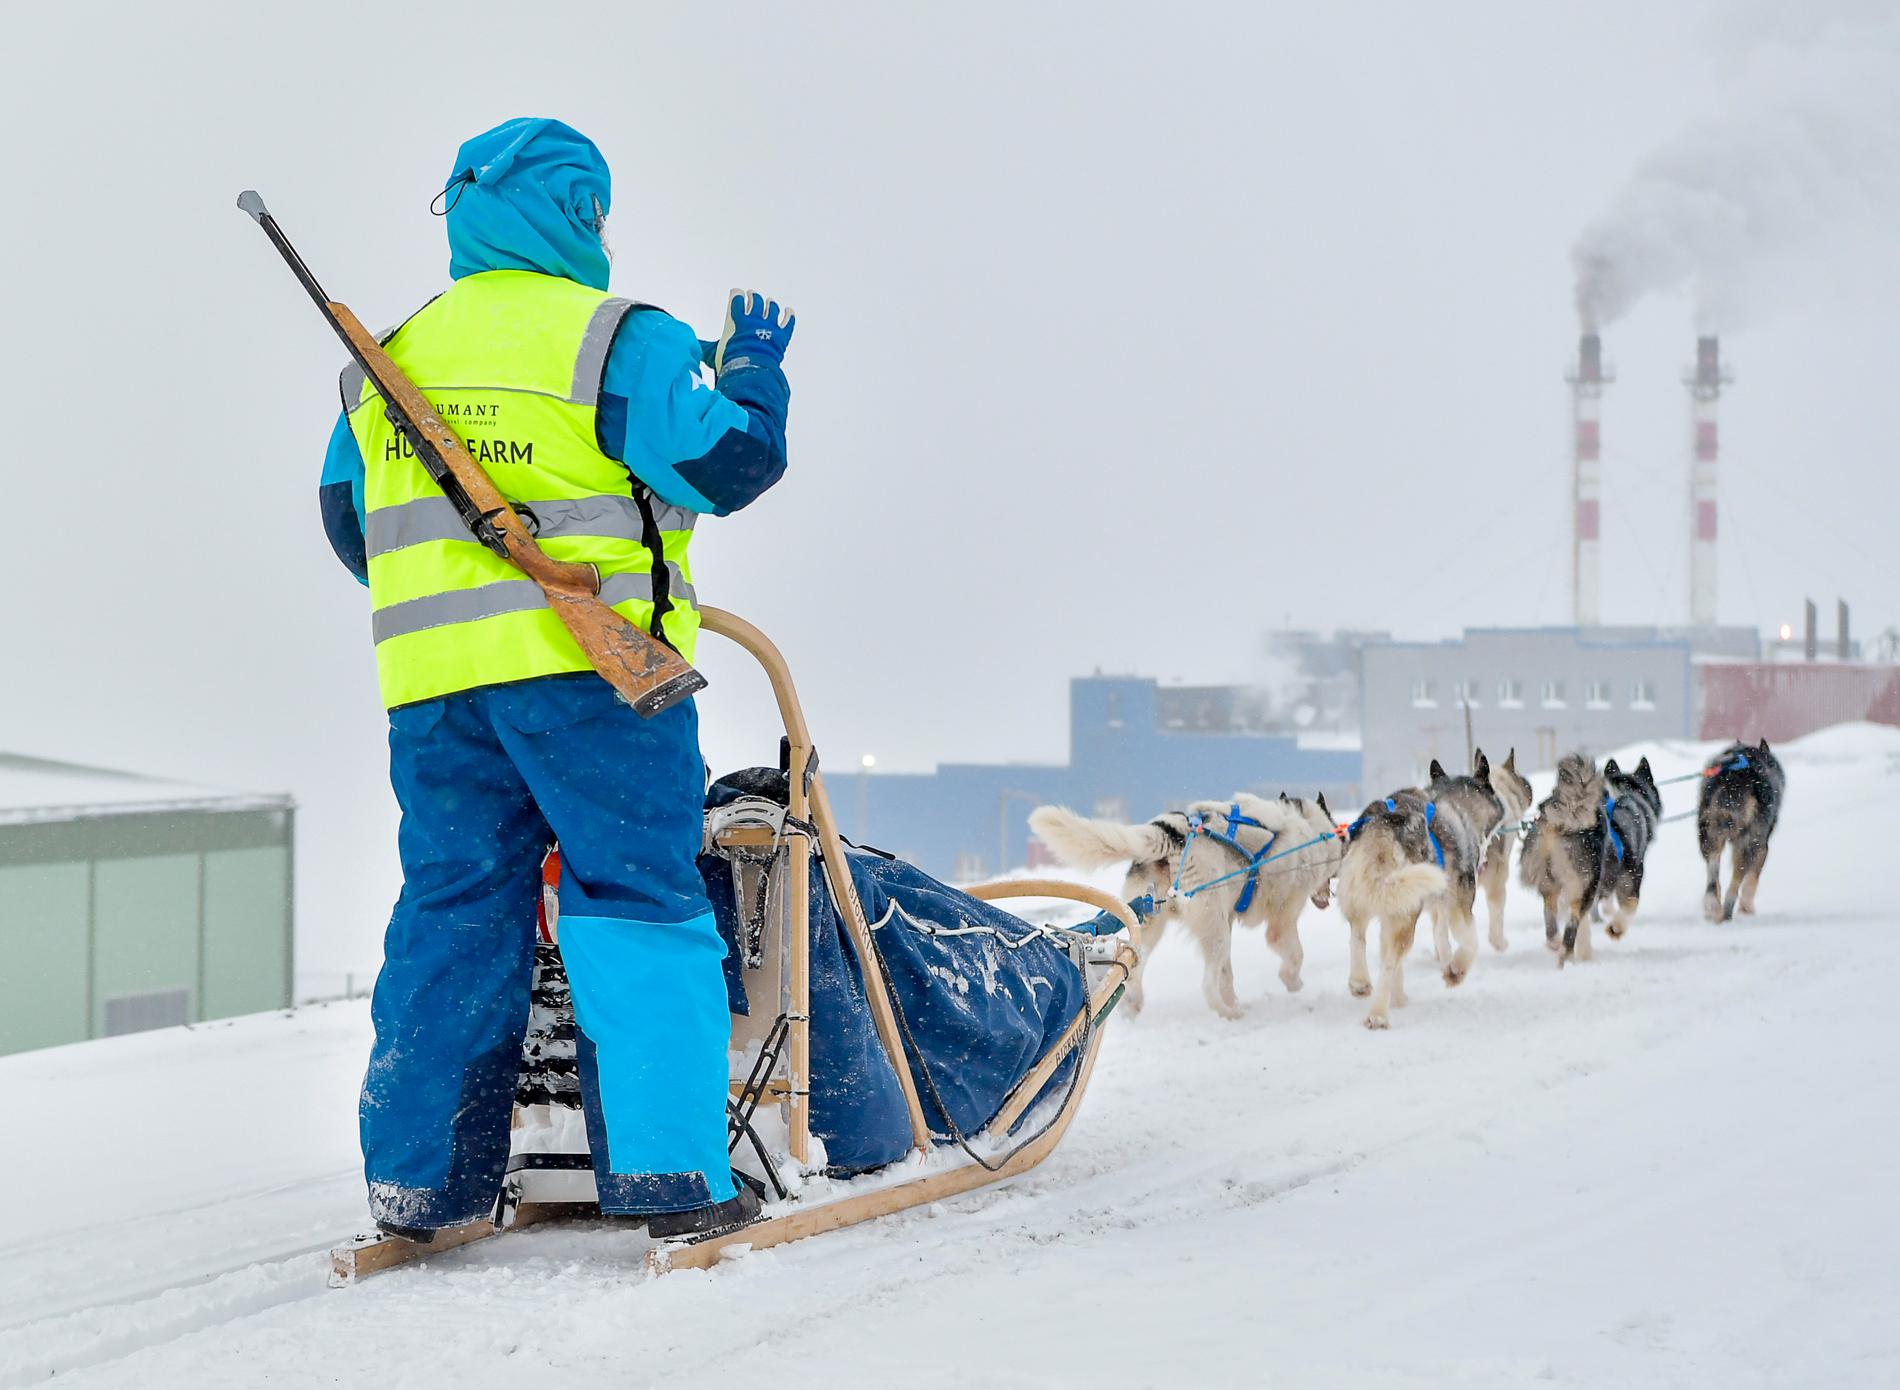 Det ryker från skorstenarna i Barentsburgs utkanter. Hundspann är bara en av många aktiviteter som erbjuds turister i det ryska gruvsamhället – i hopp om att locka fler besökare när koldriften blir allt mindre lönsam.